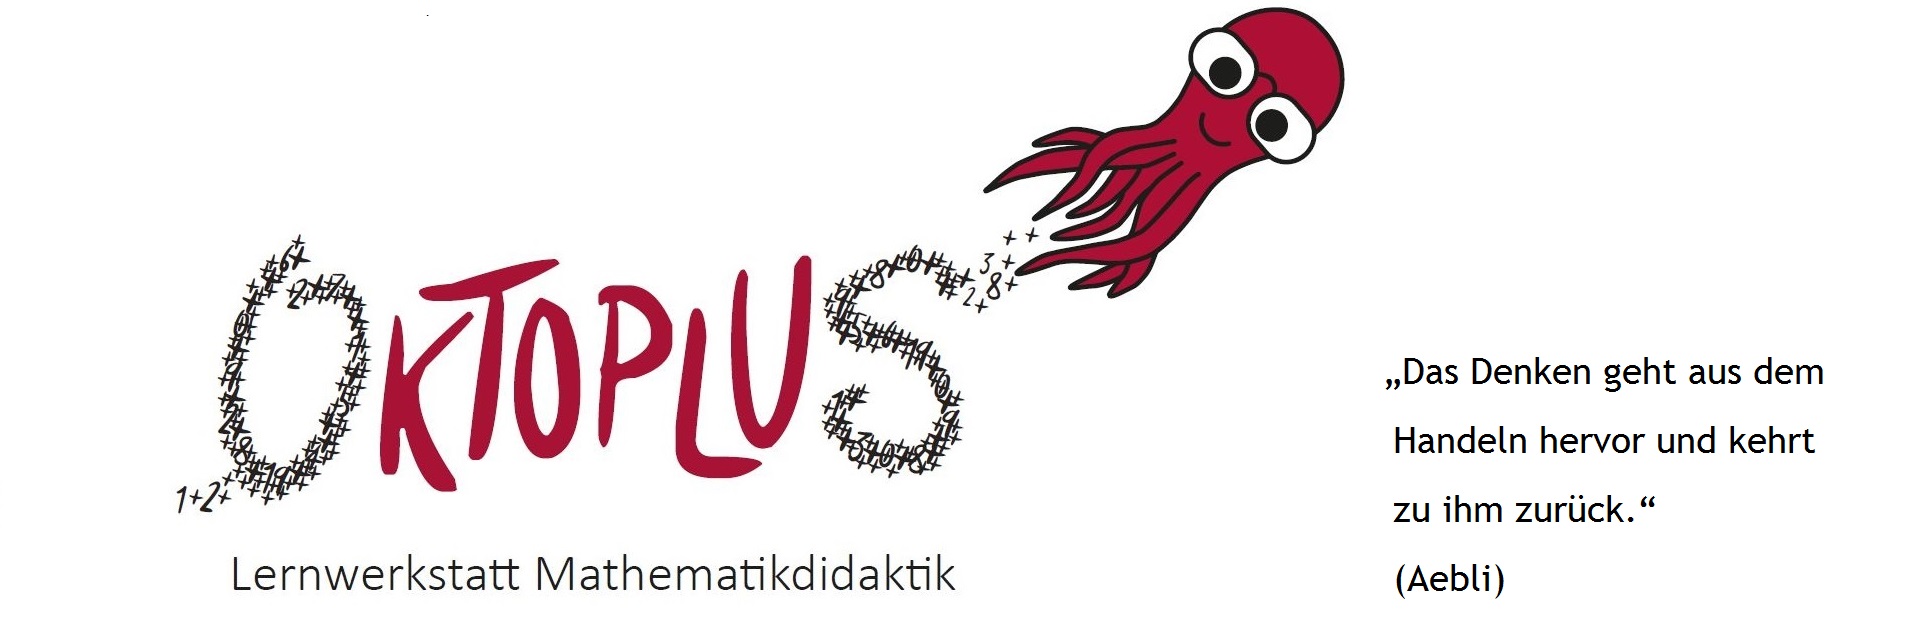 Logo der Lernwerkstatt Oktoplus mit Zitat: "Das Denken geht aus dem Handeln hervor und kehrt zu ihm zurück" (Aebli)